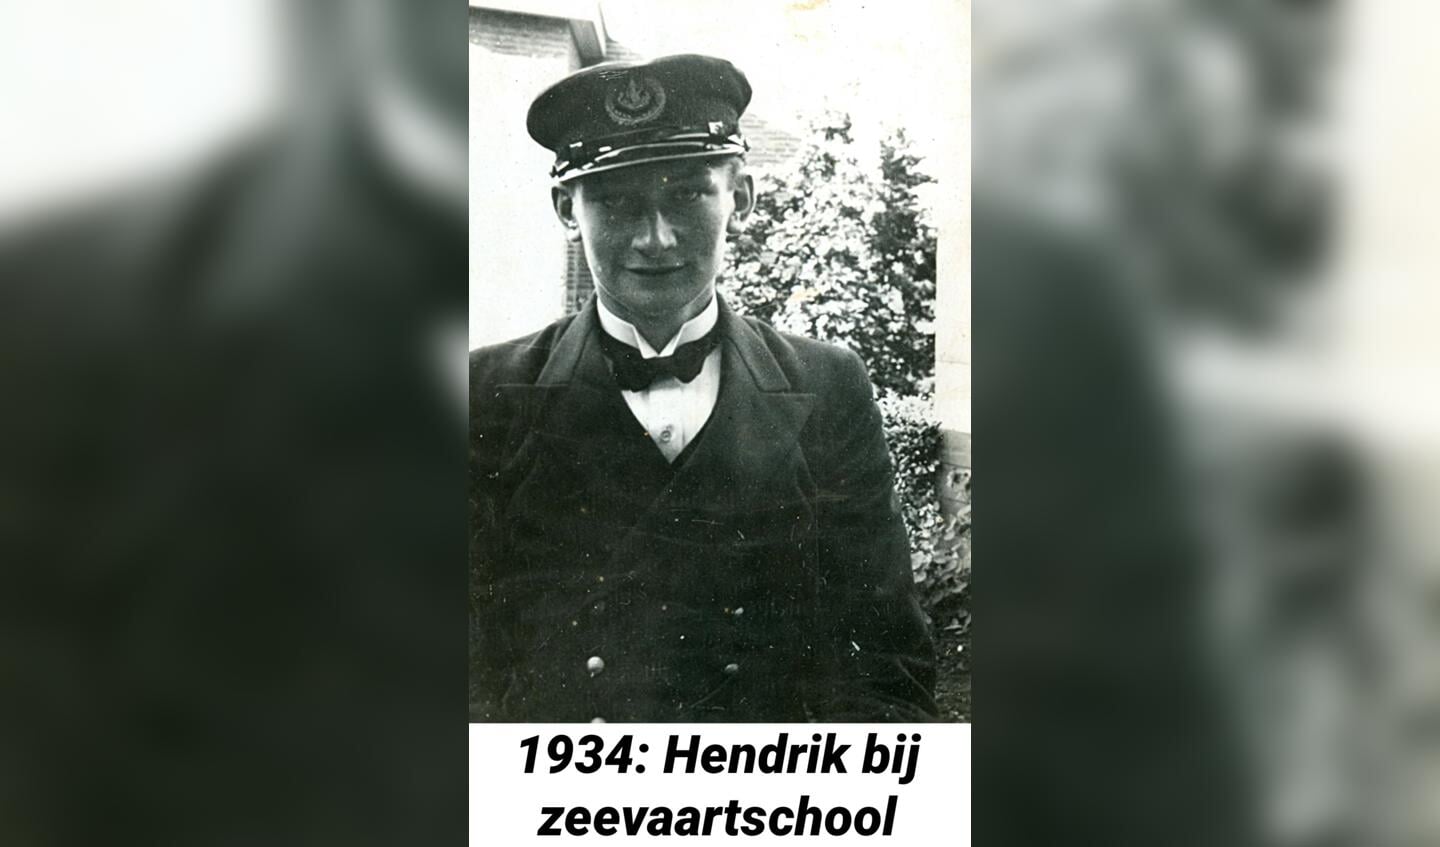 Hendrik bij zeevaartschool, 1934.